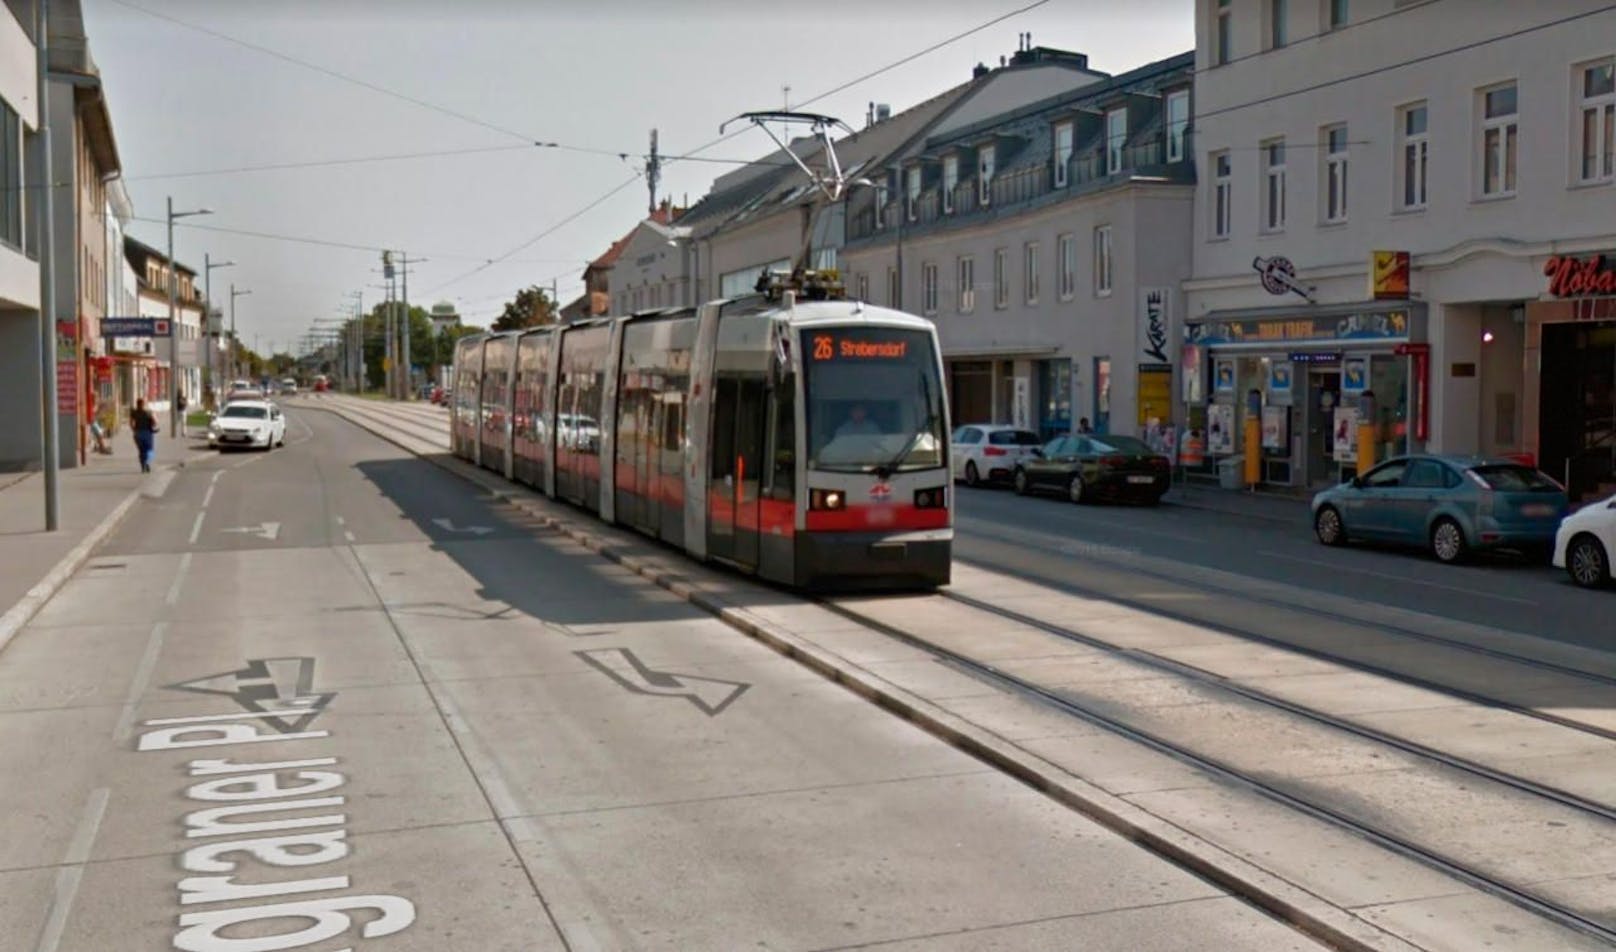 Straßenbahn am Kagraner Platz in Wien-Donaustadt. (Symbolbild)